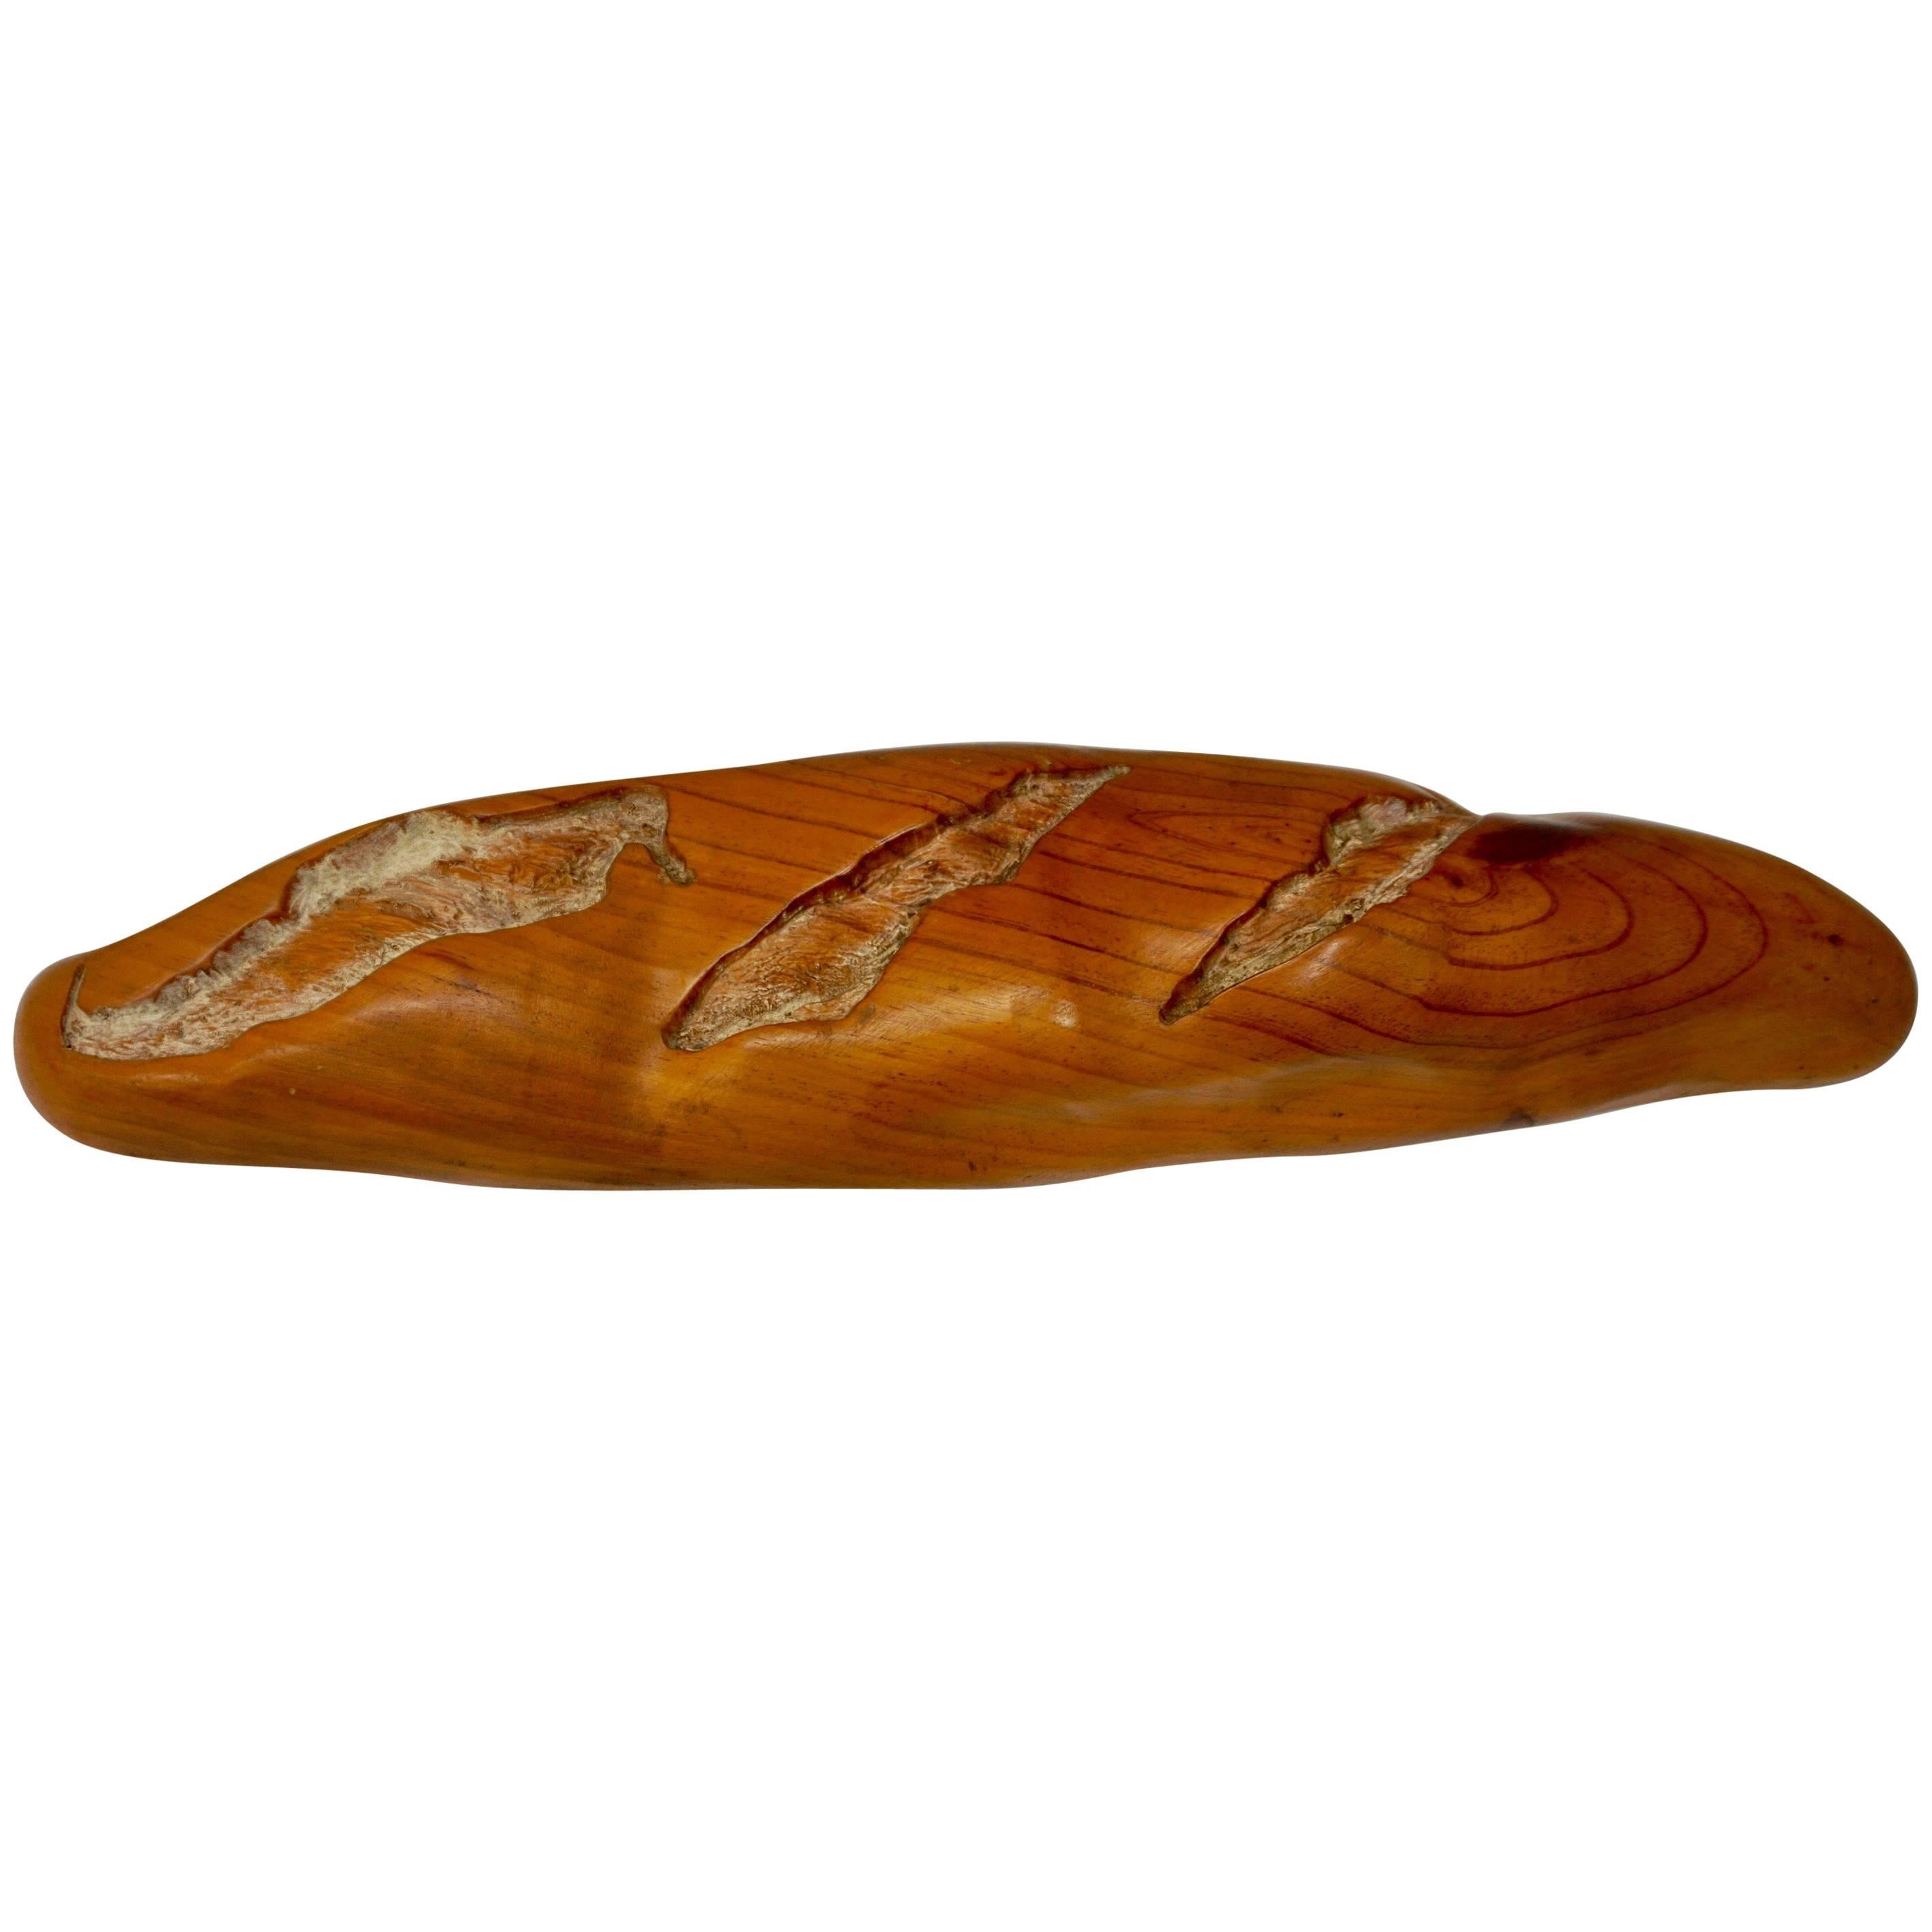 Pop Art Loaf of Bread Sculpture by Rene Megroz For Sale